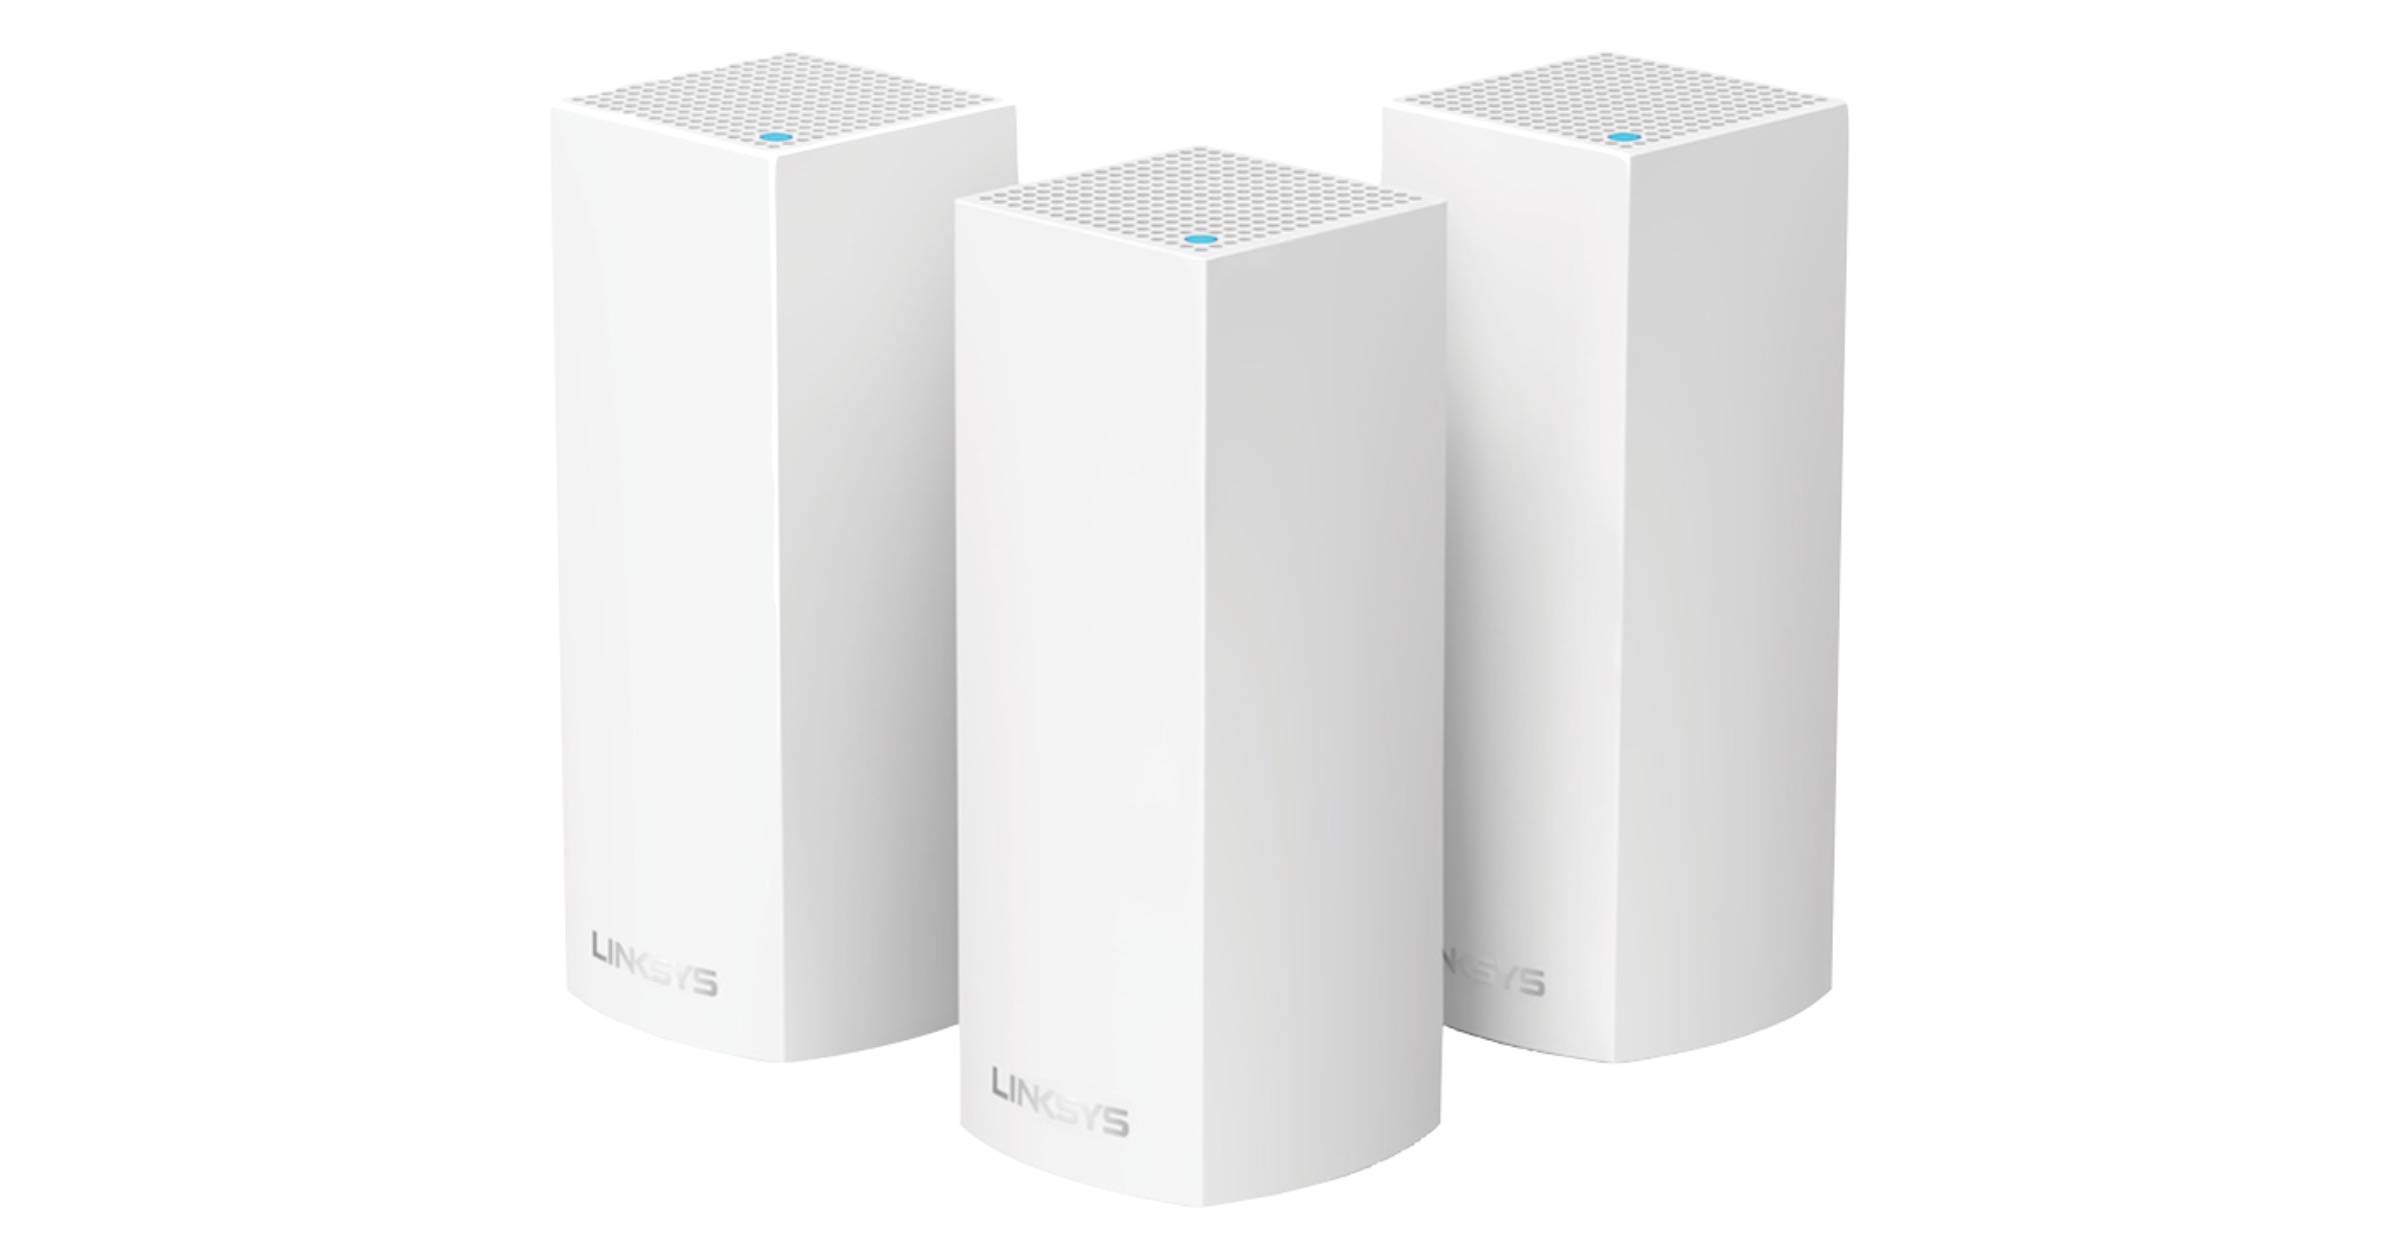 Los routers de tres bandas Linksys Velop ahora son compatibles con HomeKit